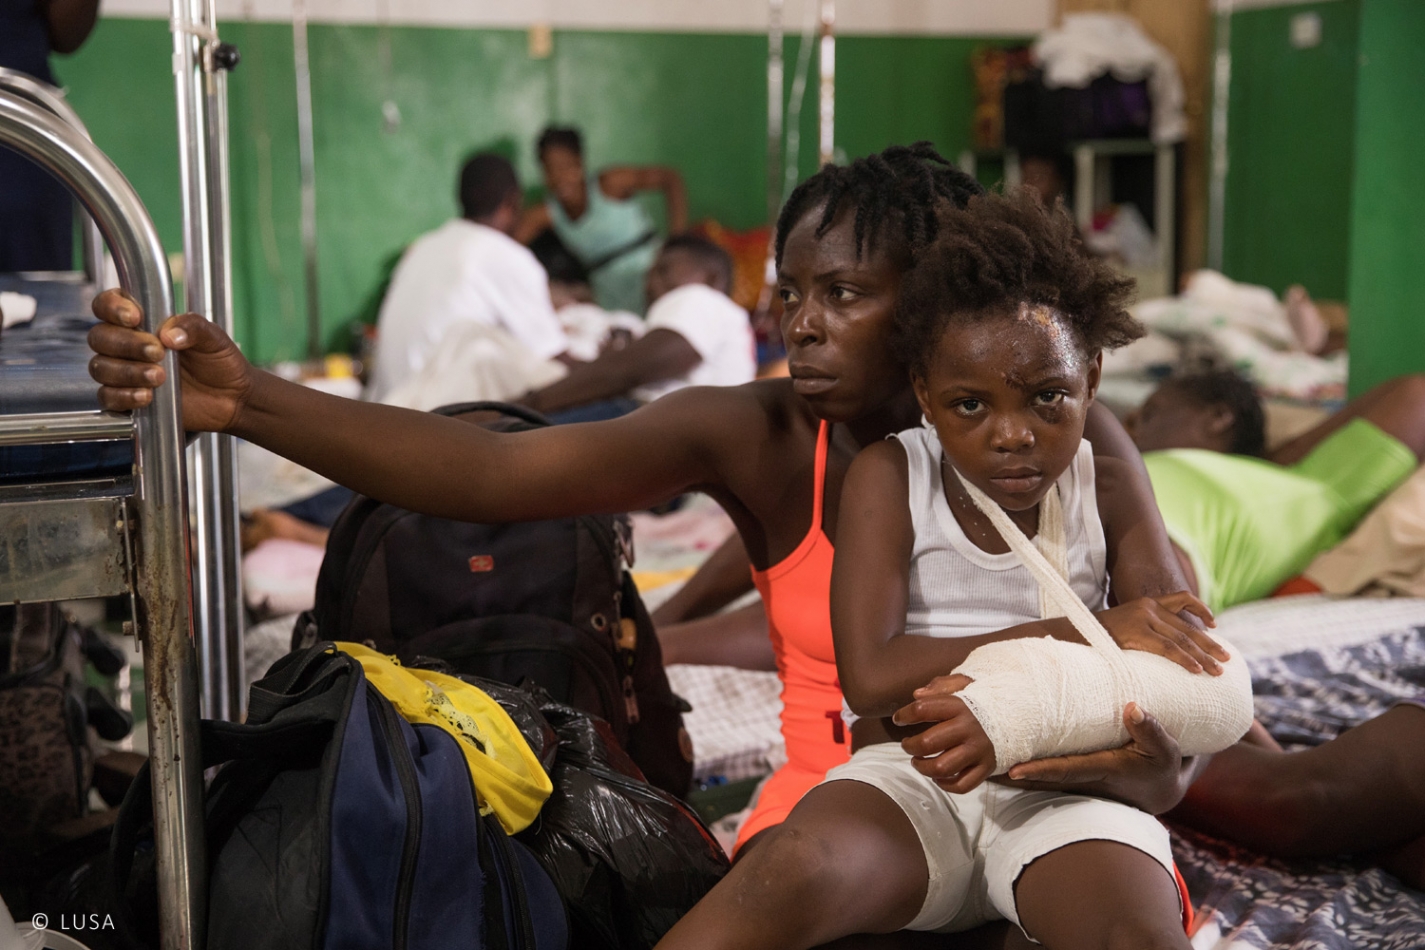 HAITI: Fundação AIS disponibiliza 500 mil euros para ajuda de emergência após o terramoto